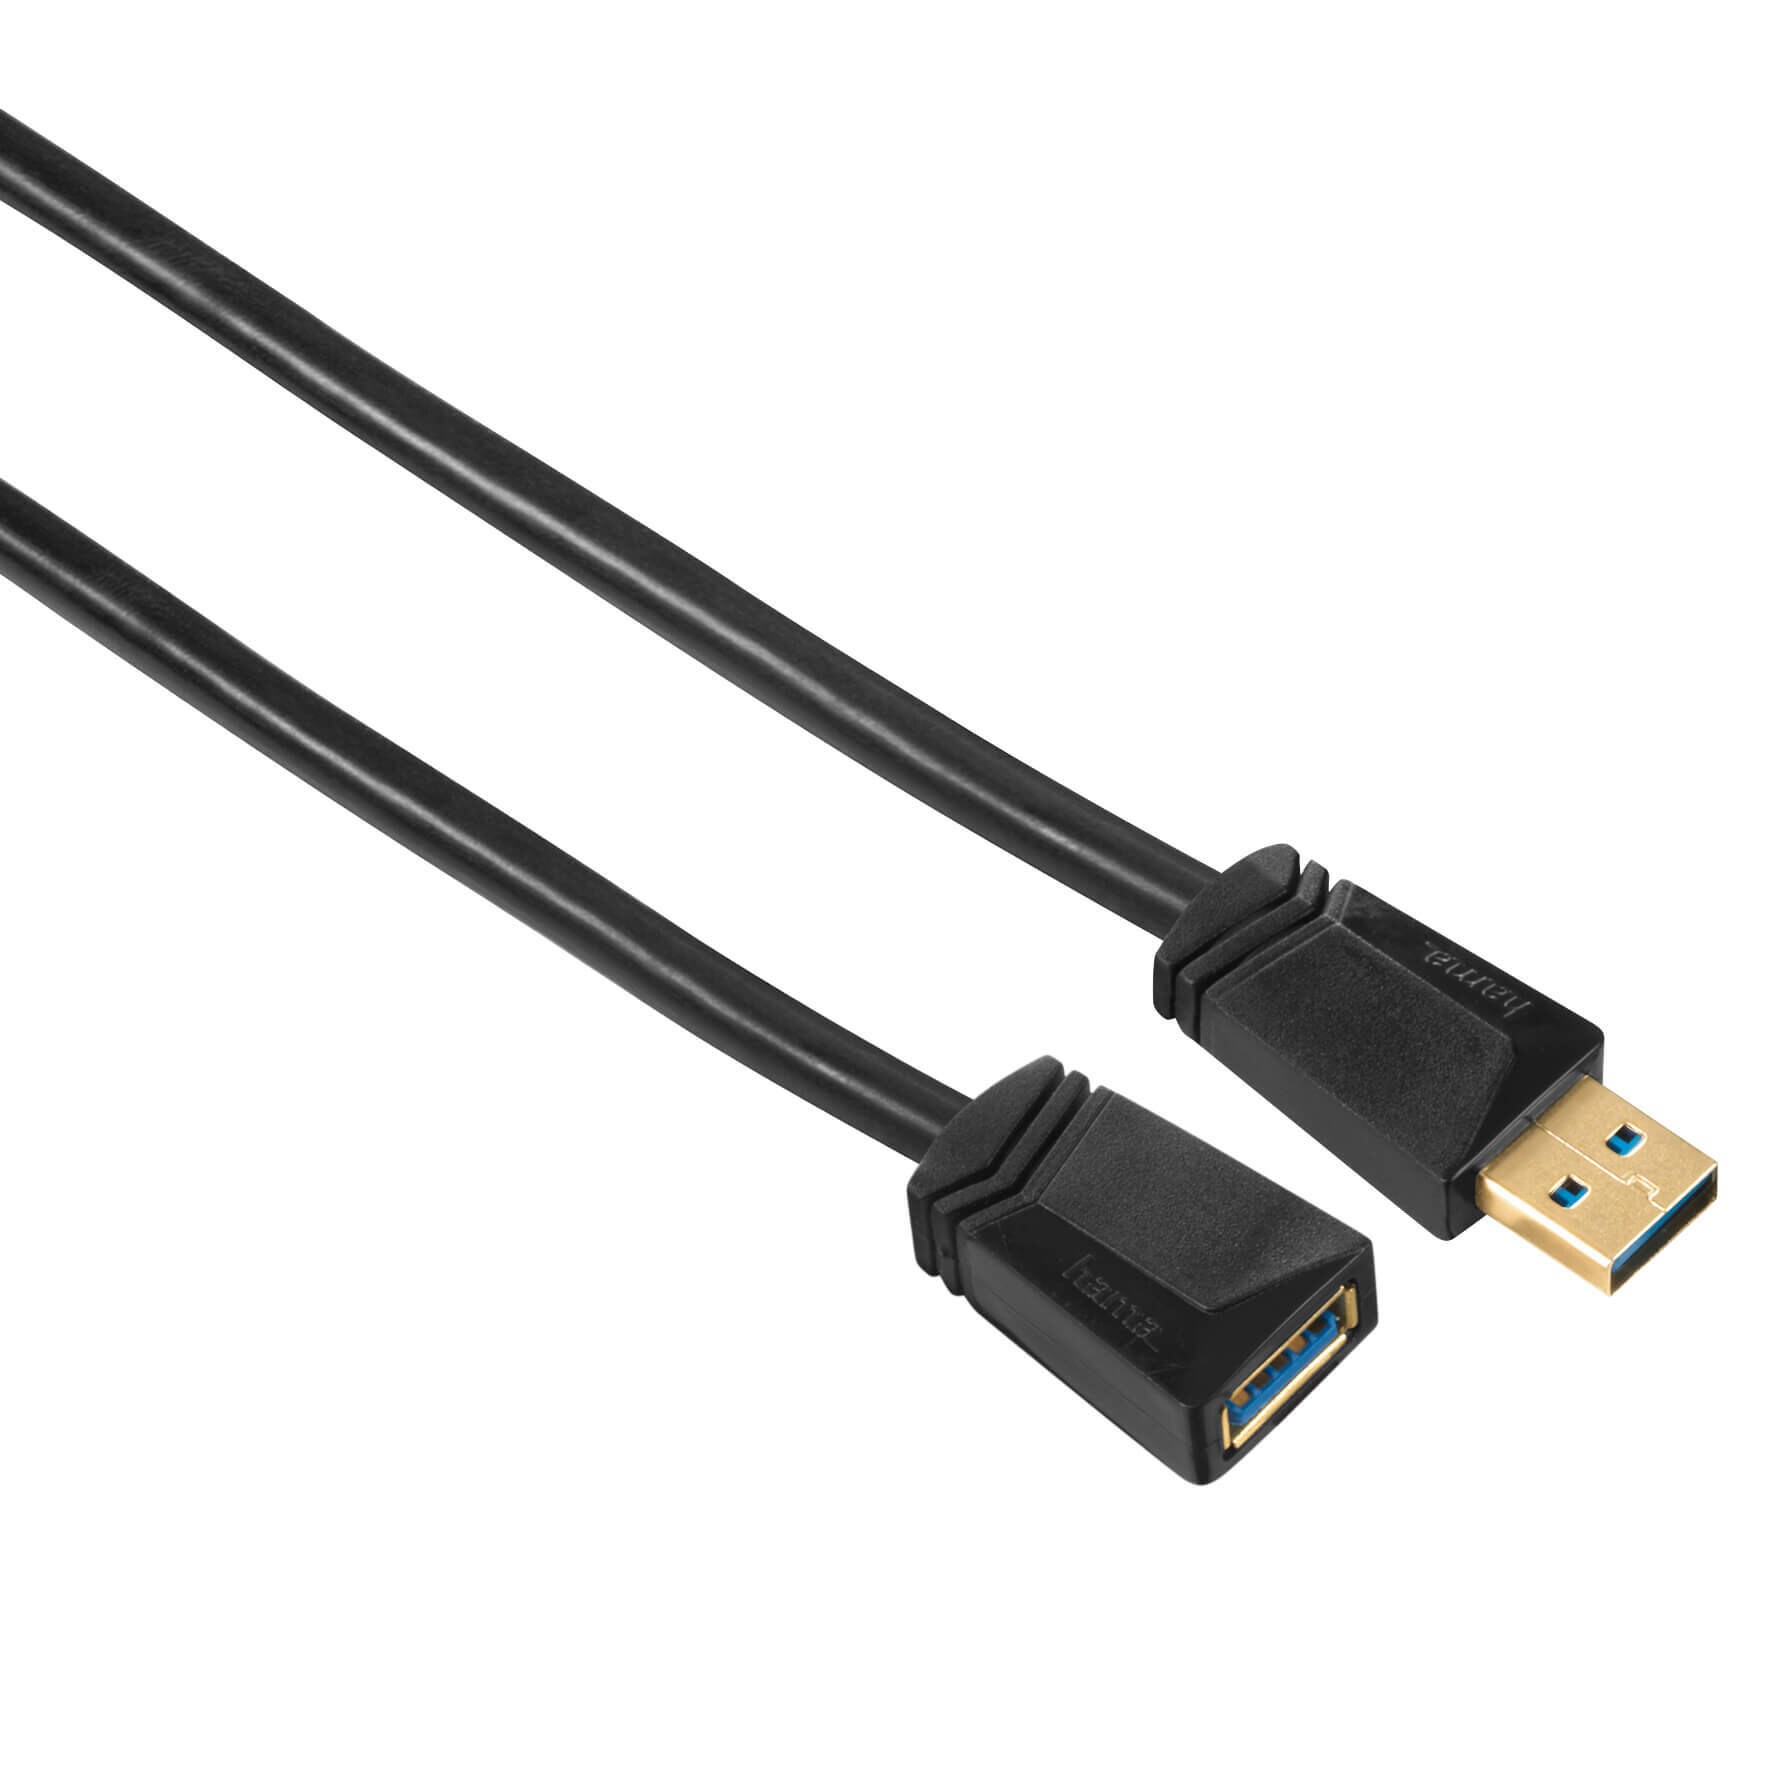 HAMA Forlængerkabel USB 3.0 1.8m Sort/Guld TL | Elgiganten